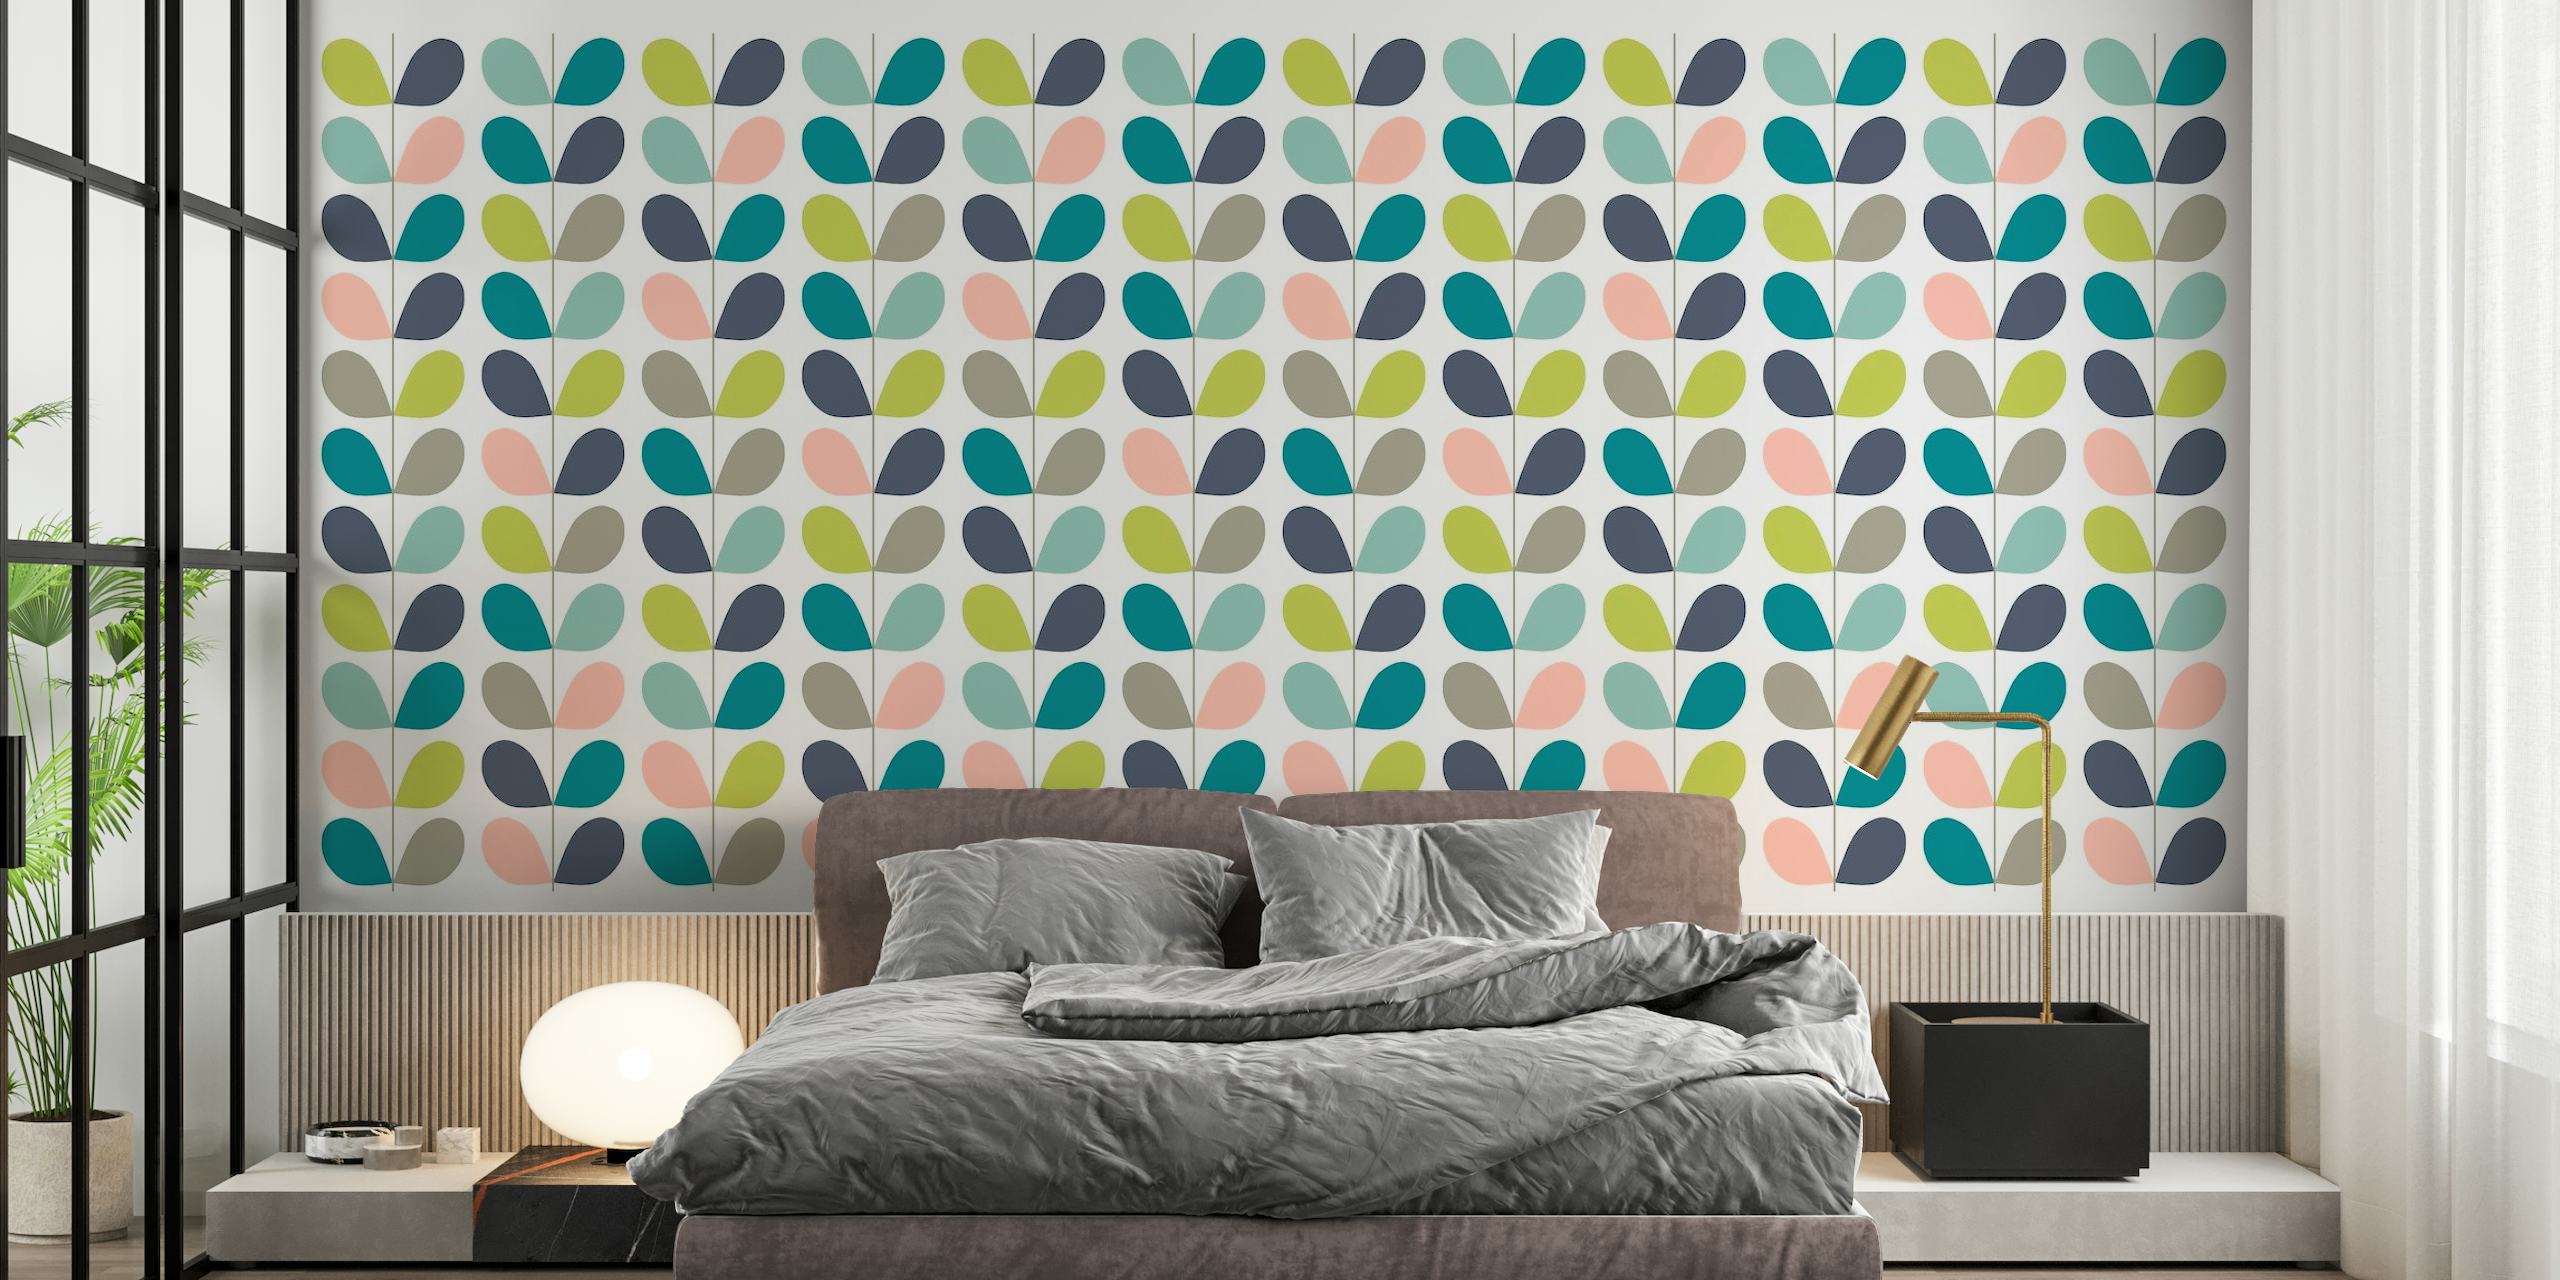 Stilisierte Pastellblätter in einem minimalistischen Wandgemäldemuster